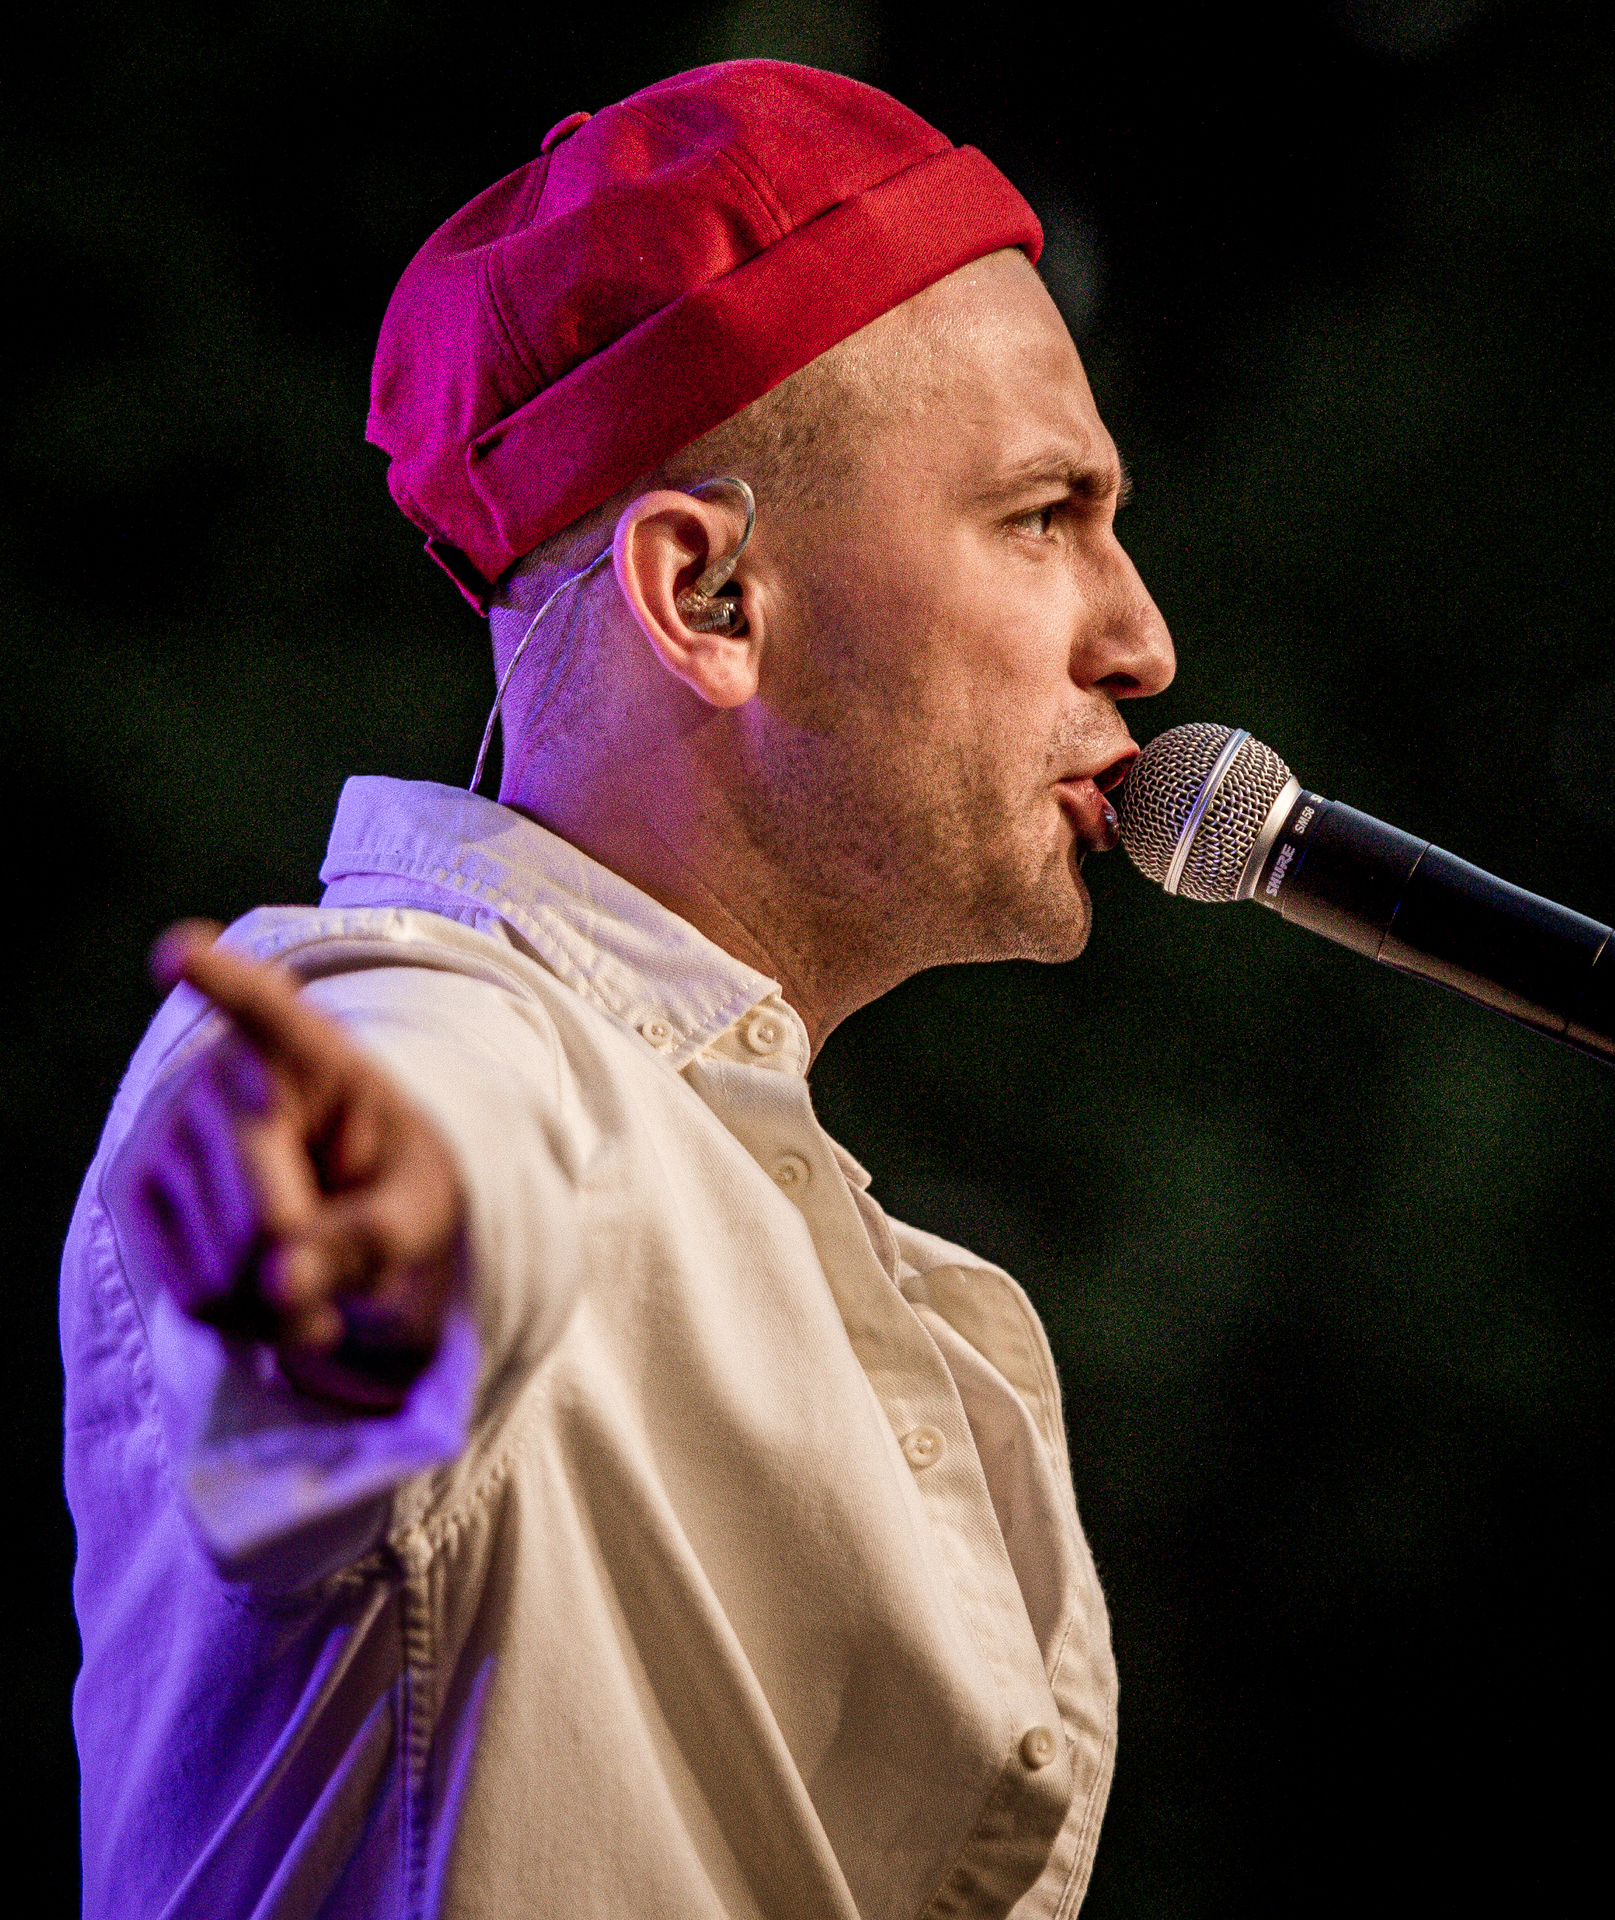 Zdjęcie. Mężczyzna w białej koszuli i czerwonej czapce na głowie śpiewa do mikrofonu. To Arek Kłusowski.